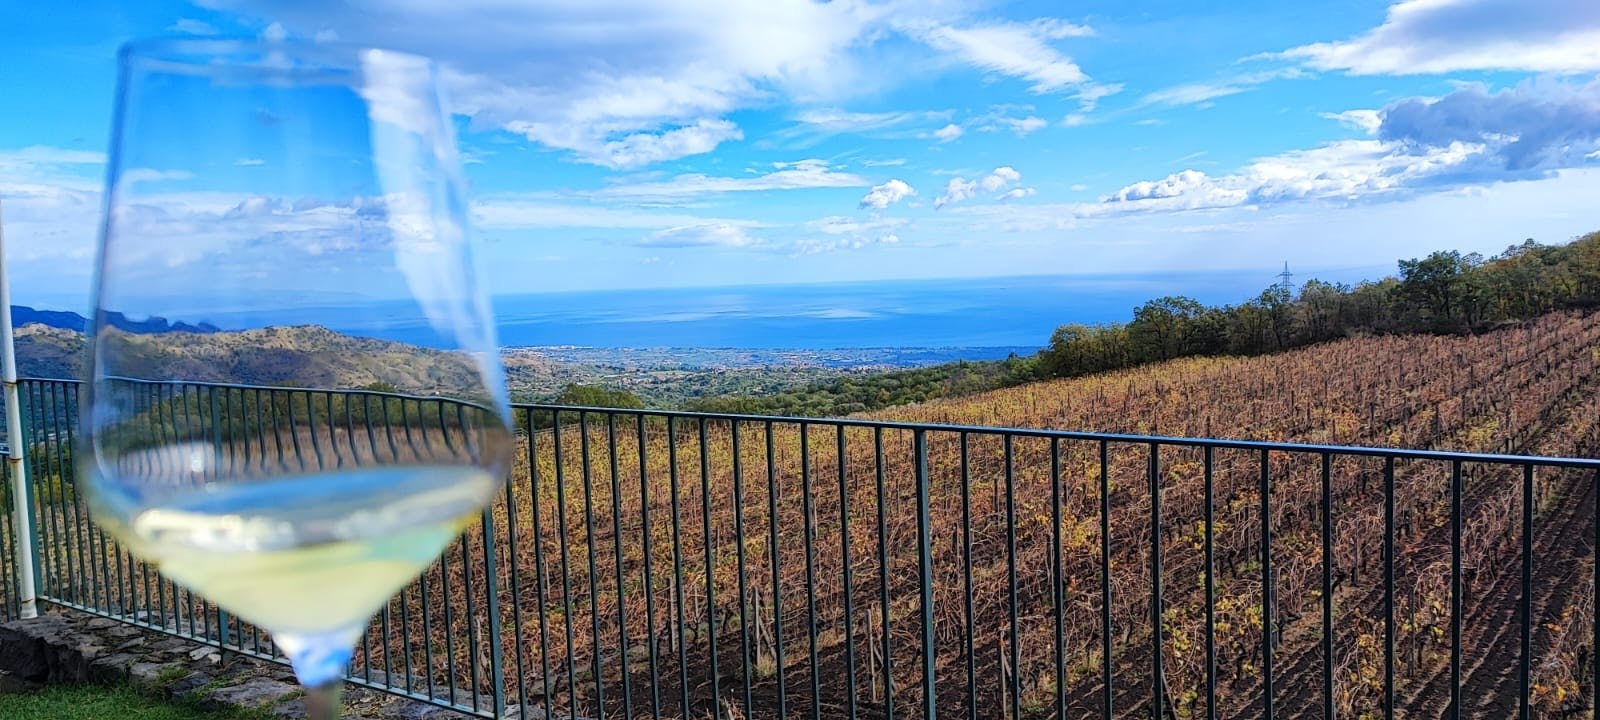 7 dégustations de vins et de mets dans le parc national de l'Etna avec visite de caves